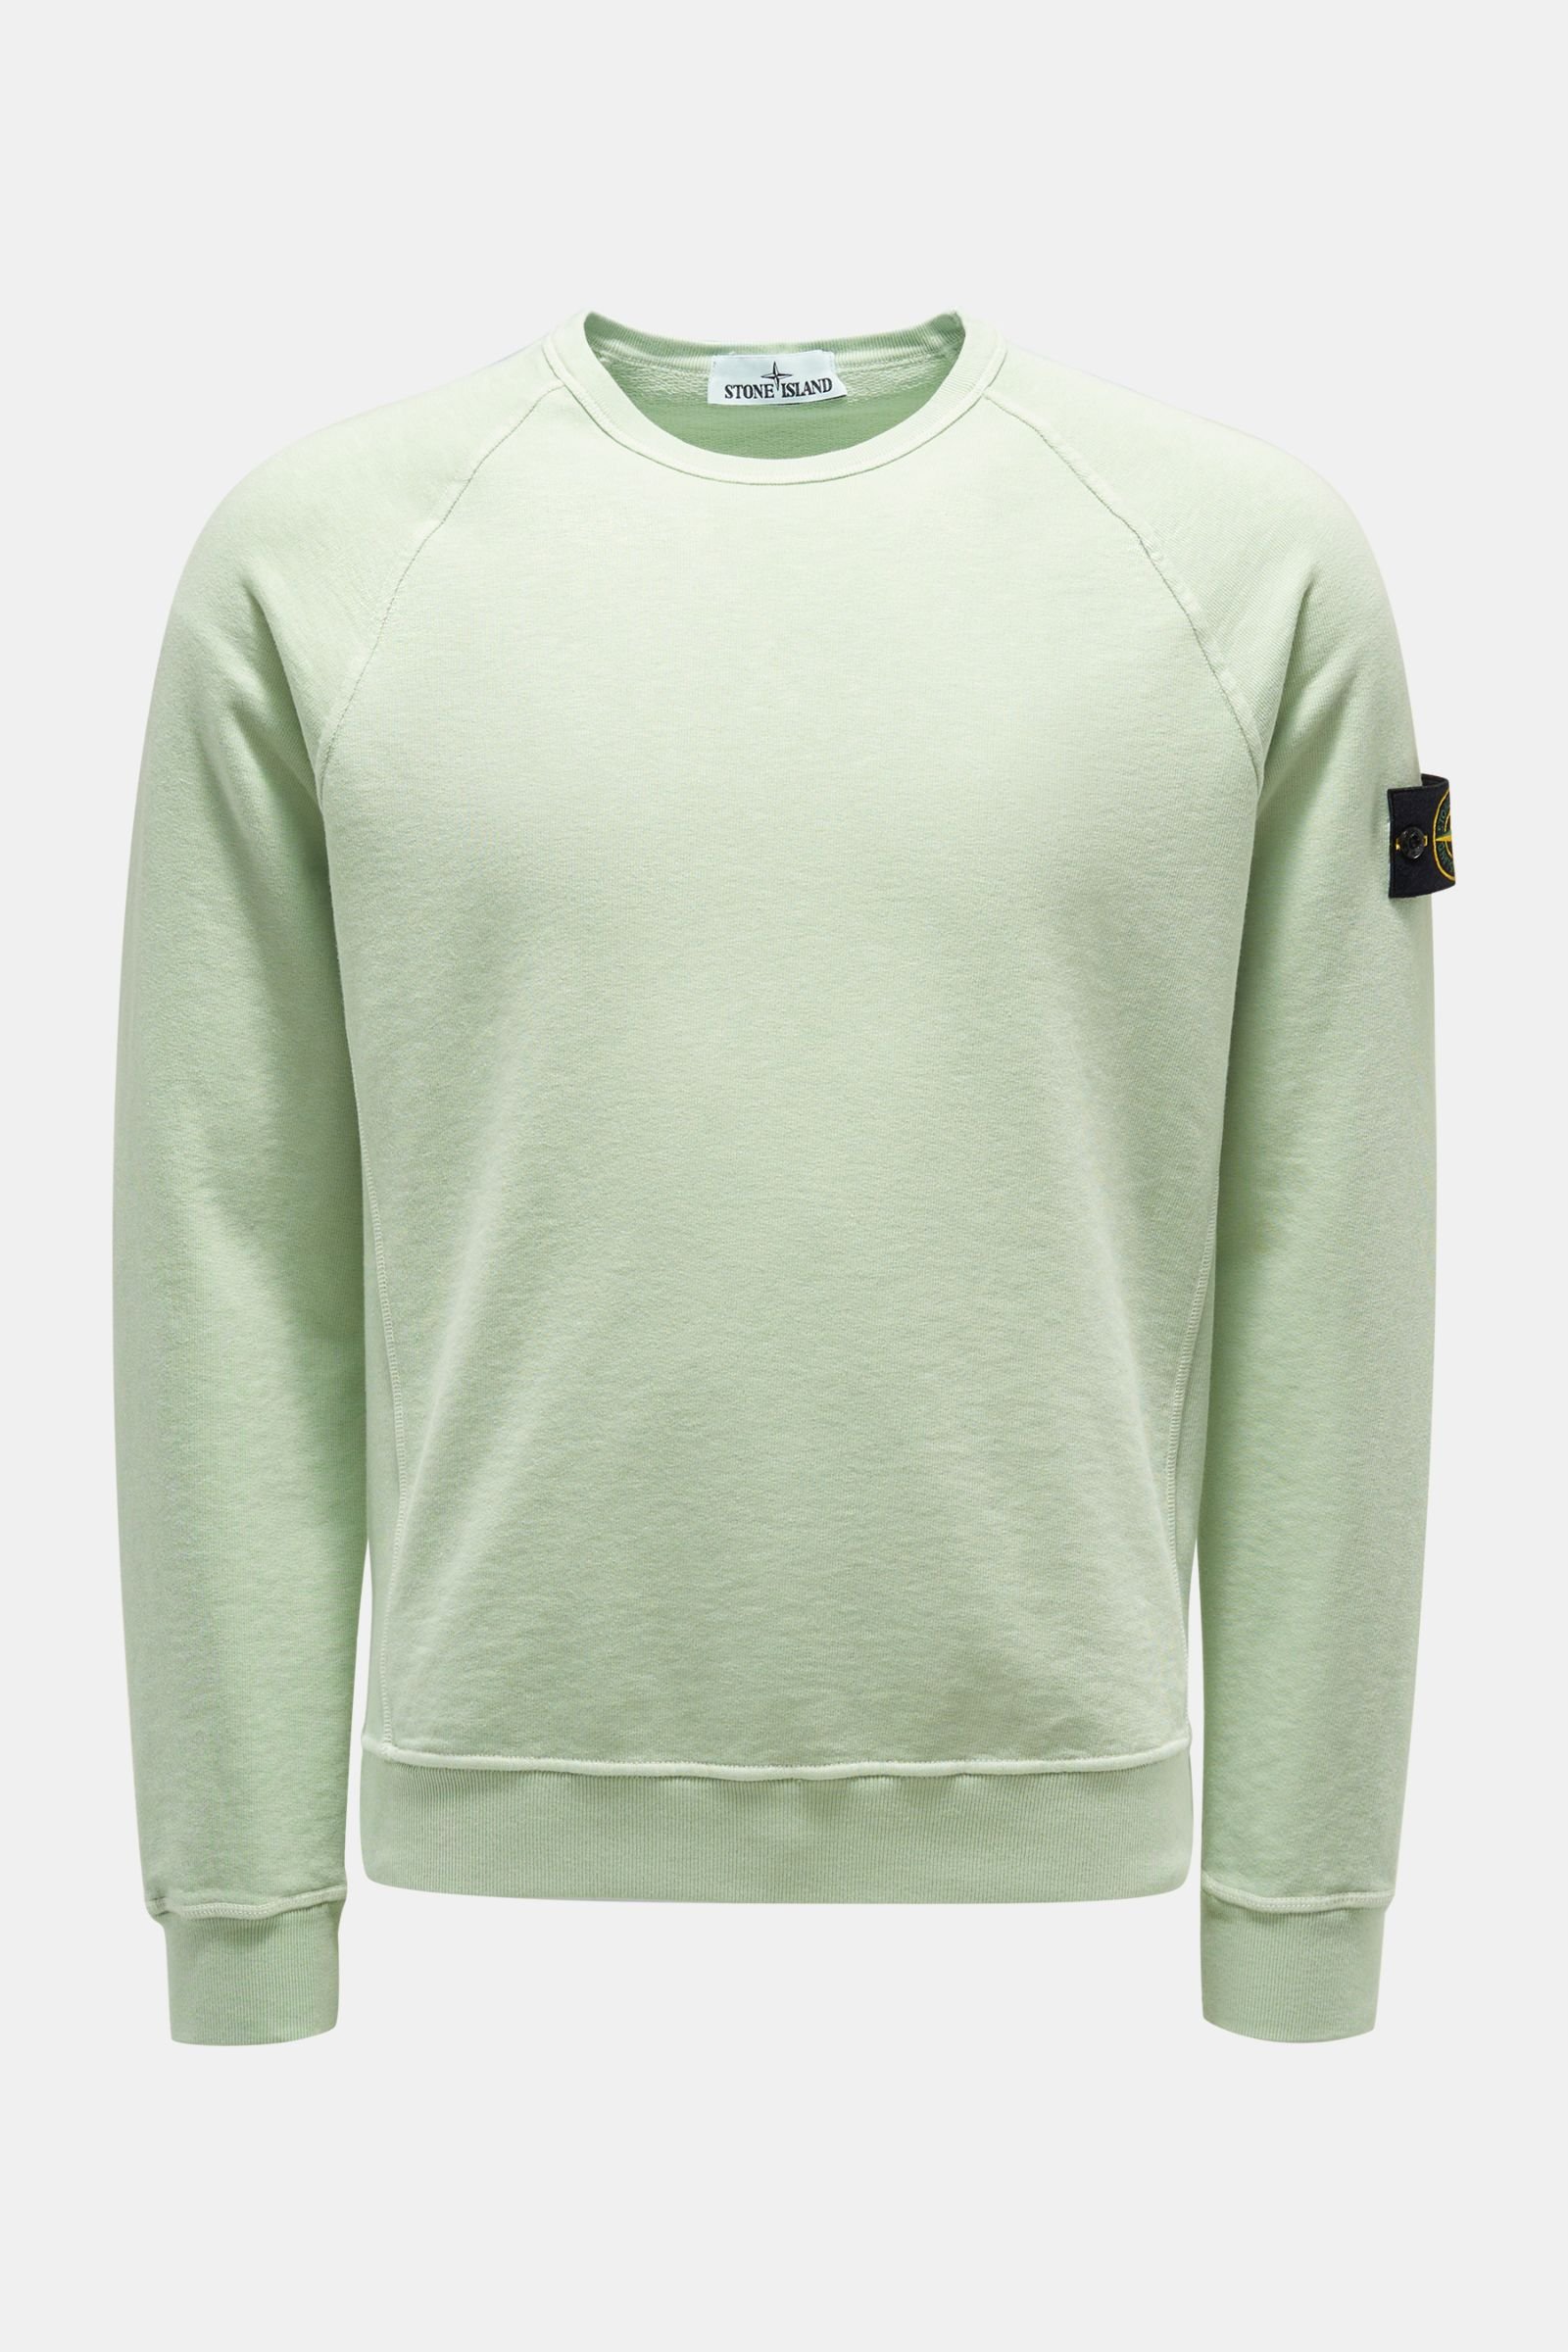 Crew neck sweatshirt mint green